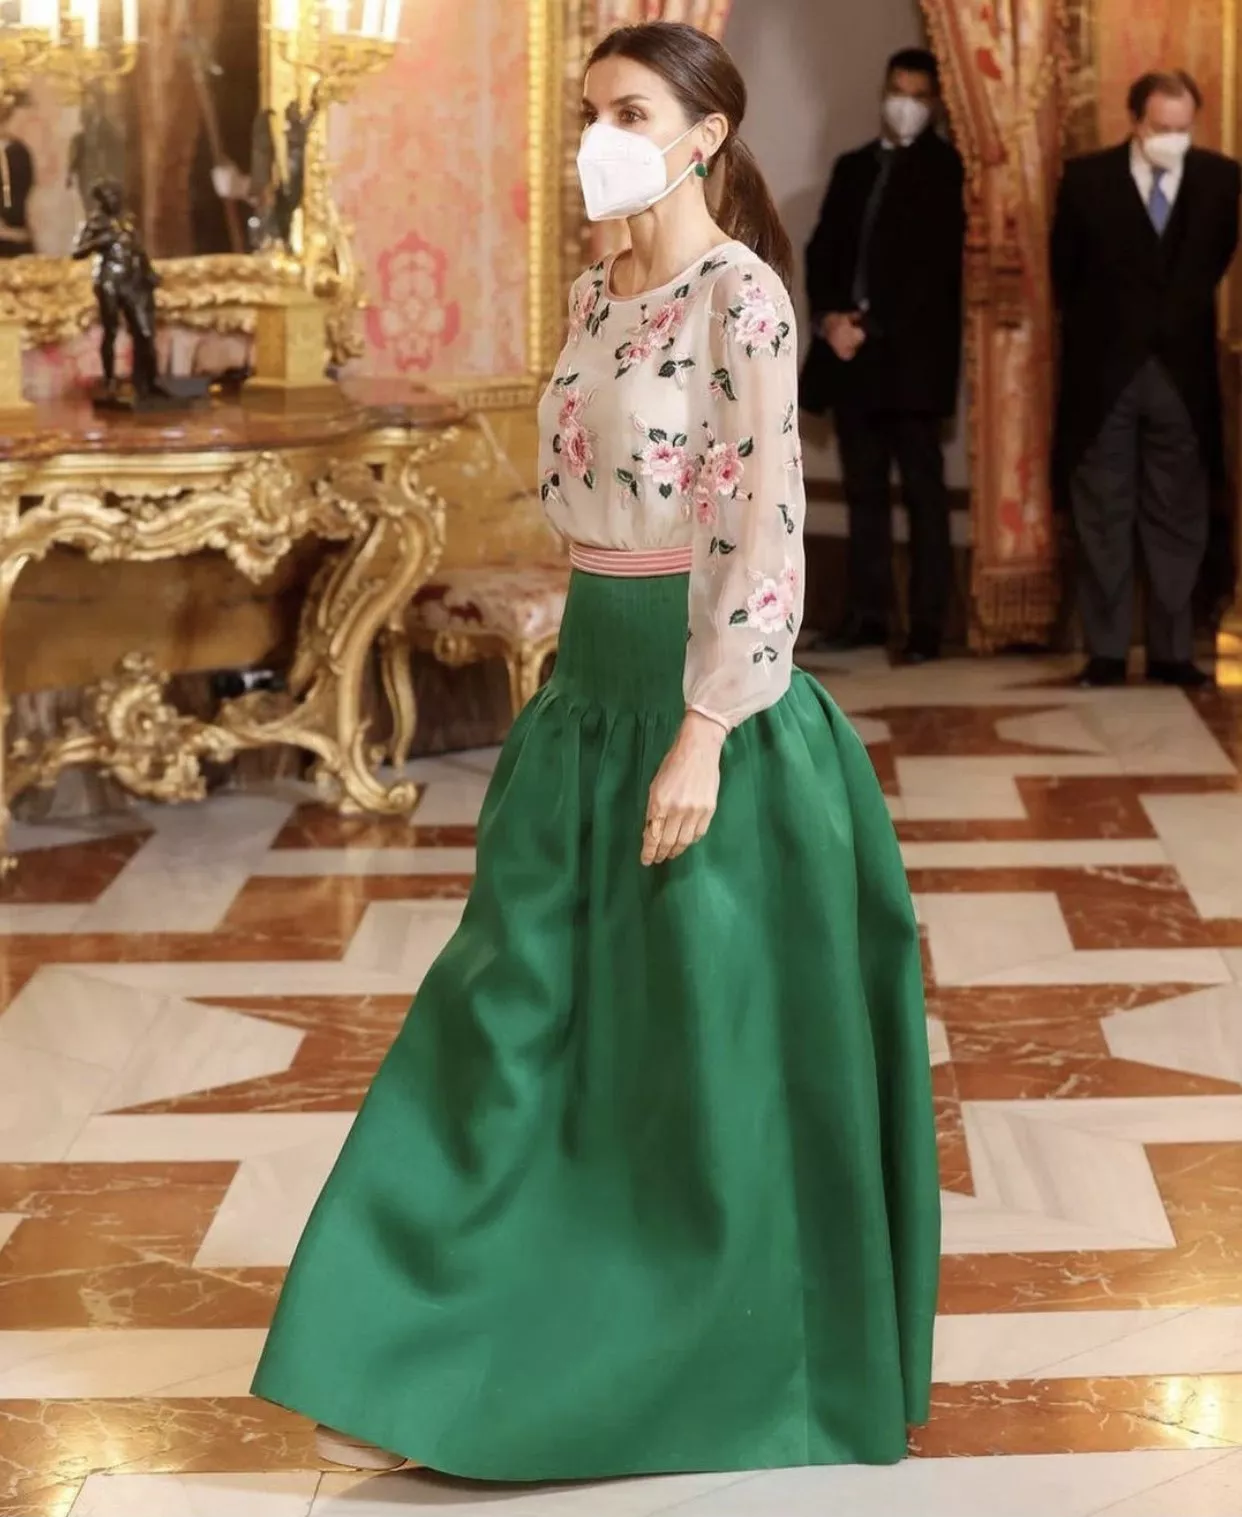 بخطوة لافتة، الملكة ليتيزيا تعتمد فستان الملكة صوفيا في مدريد